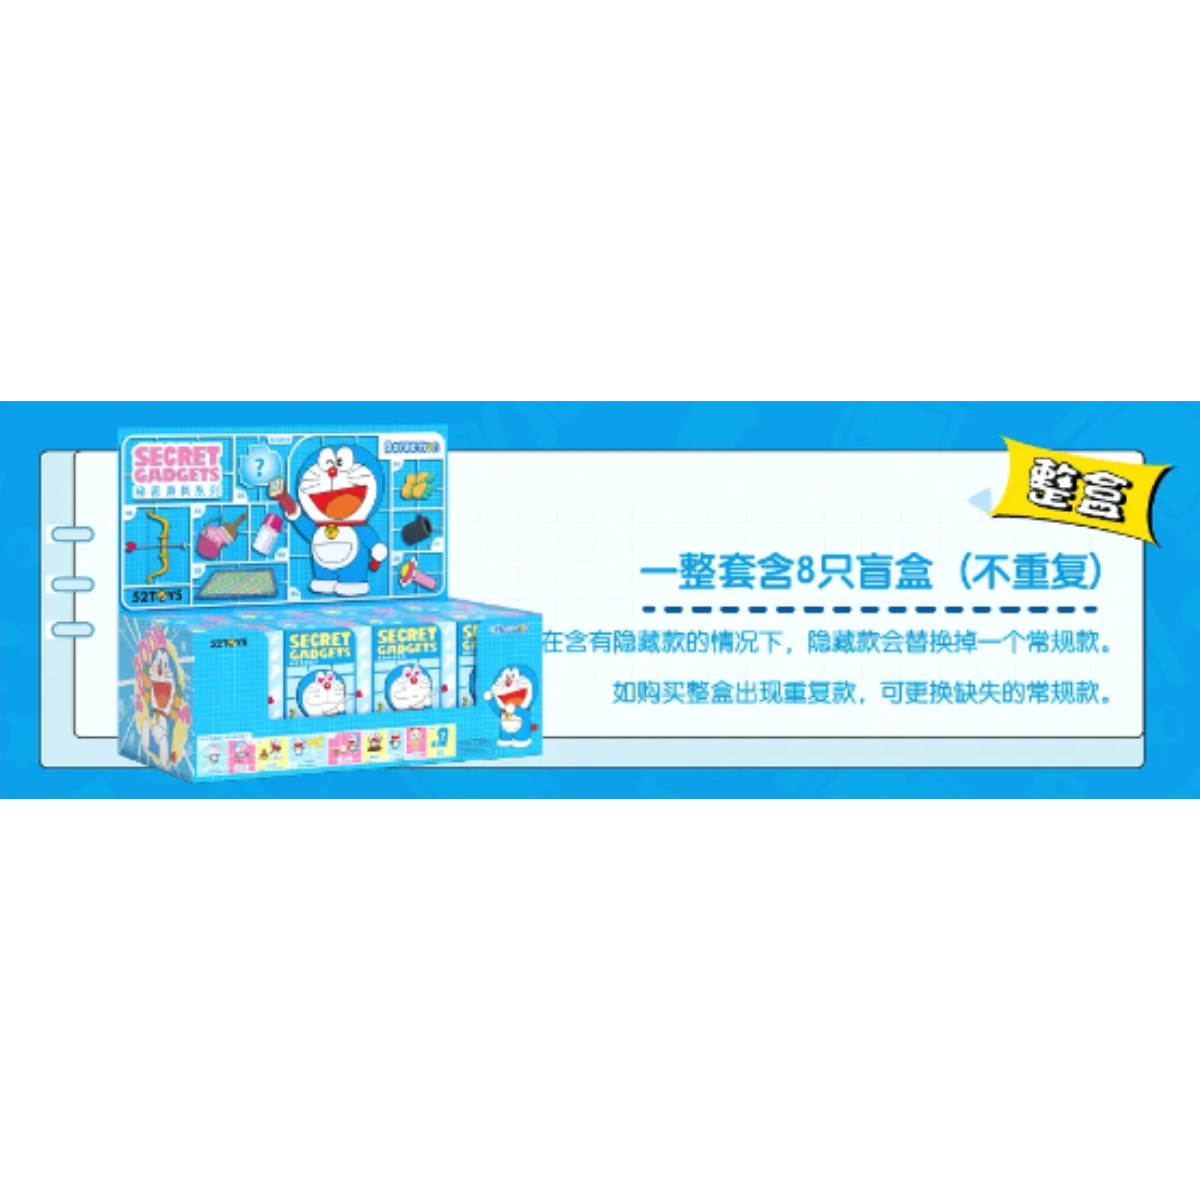 52Toys x Doraemon Secret Gadgets Series-Display Box (8pcs)-52Toys-Ace Cards &amp; Collectibles